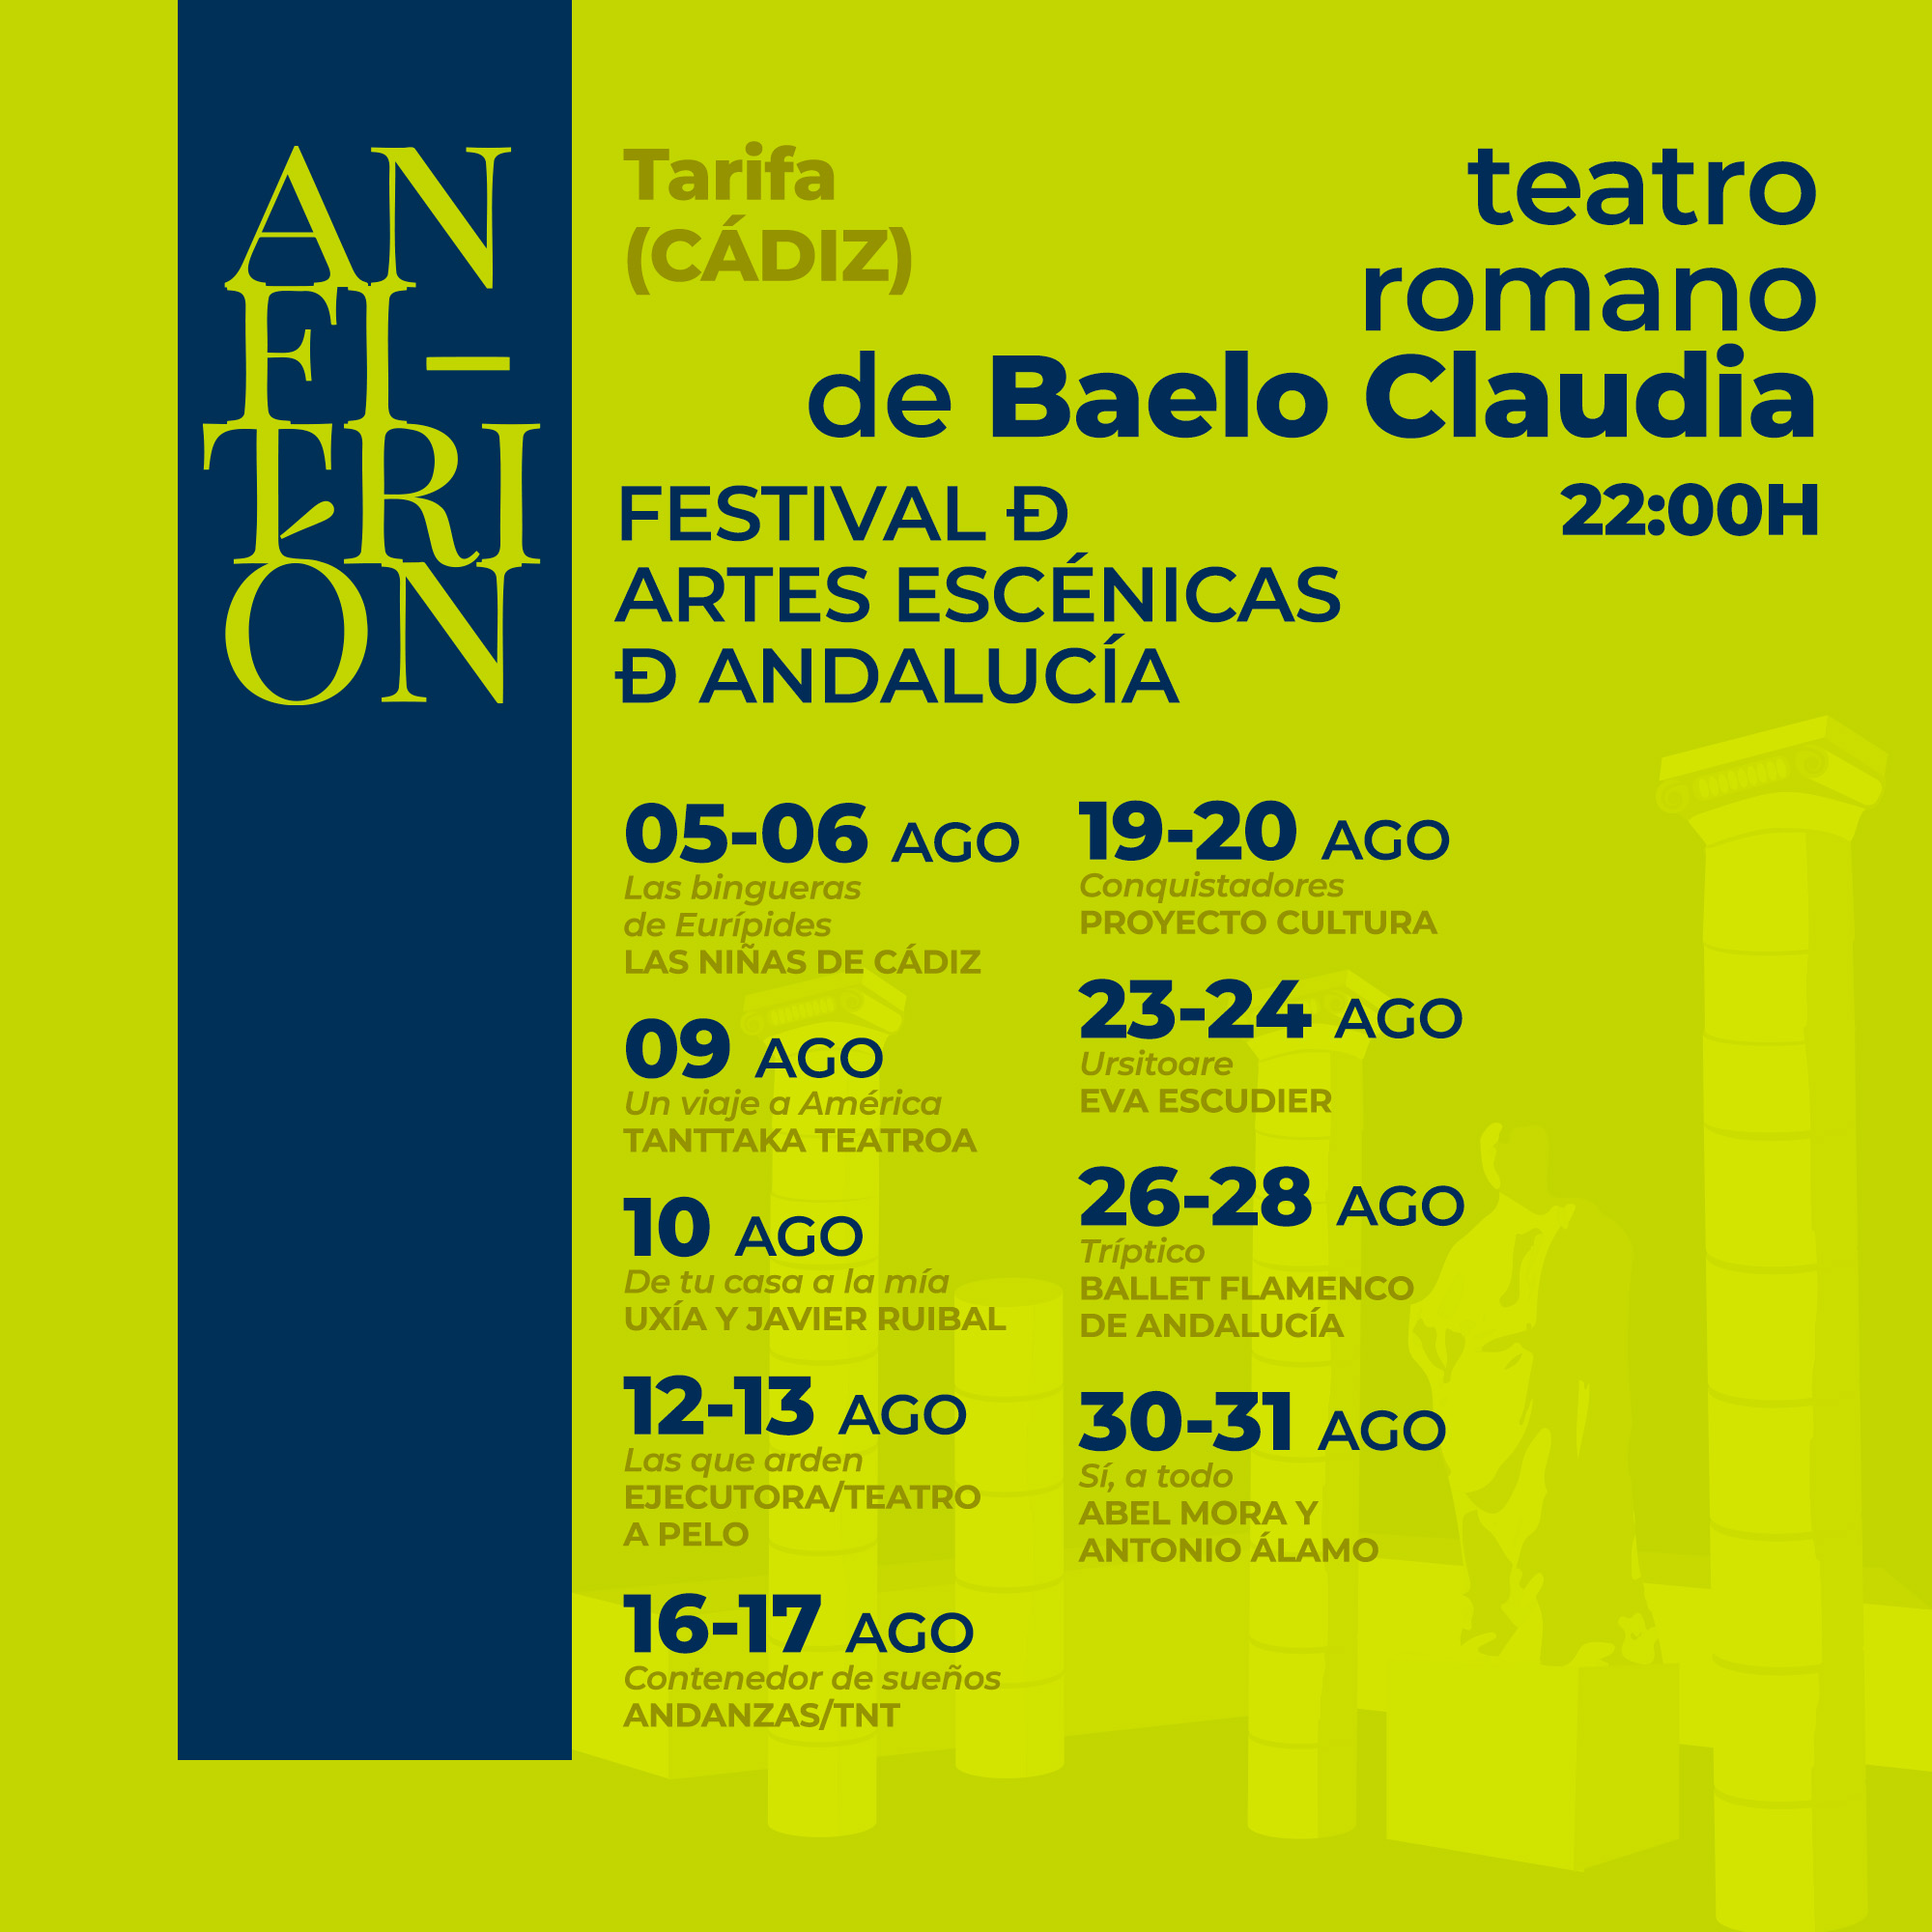 Programación del Festival Anfitrión en Baelo Claudia